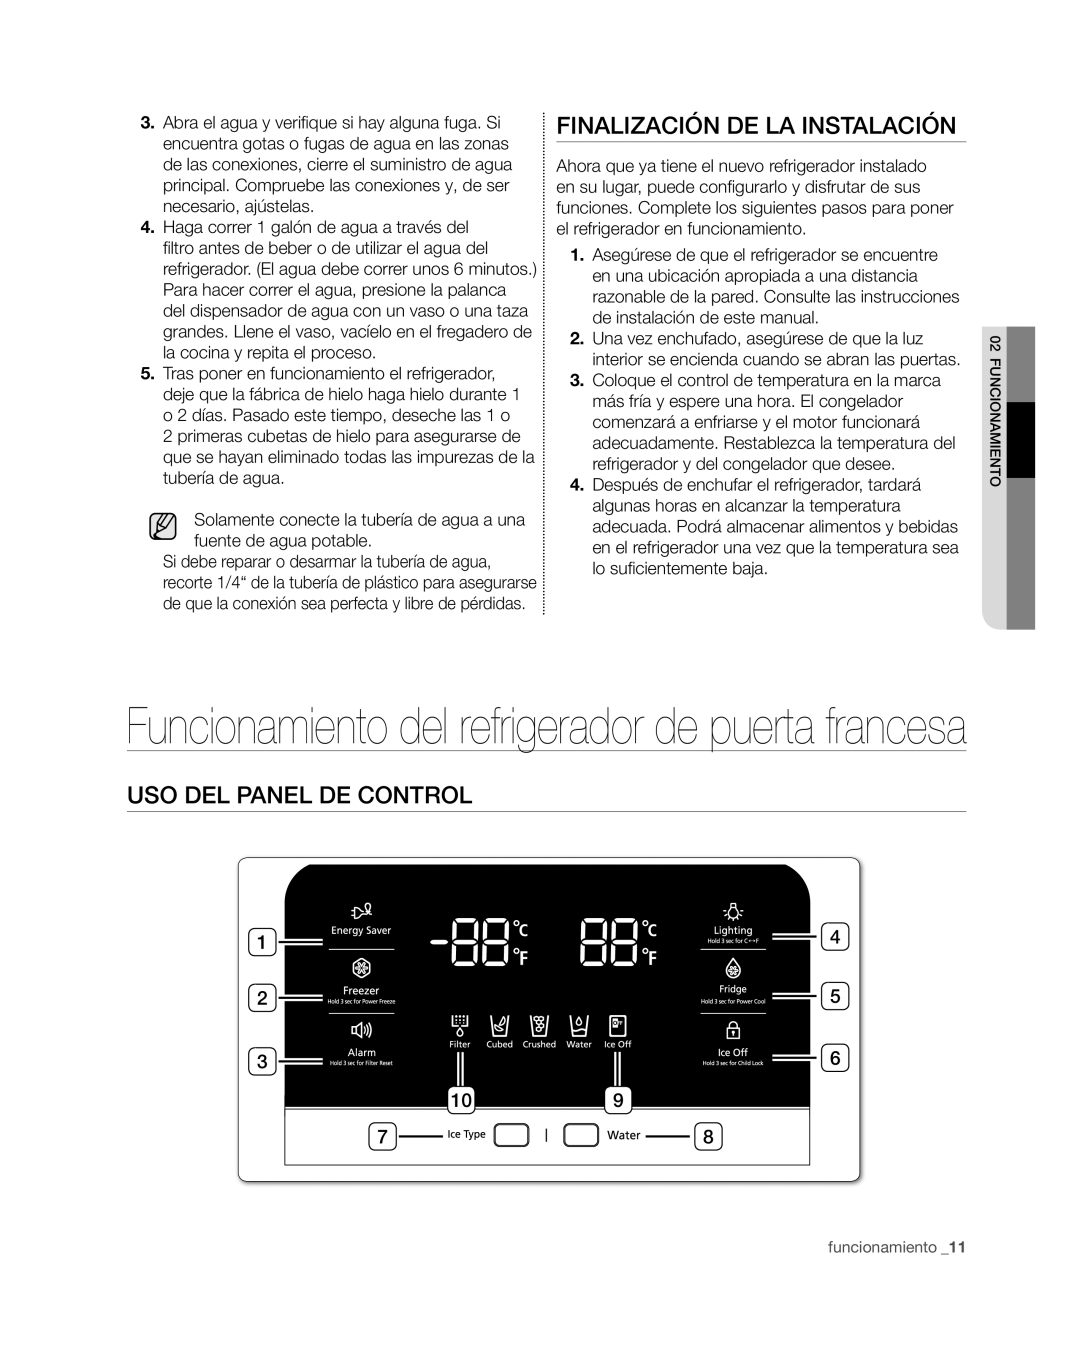 Samsung RF4267HA user manual Finalización de la instalación, Uso del panel de control, funcionamiento _11 